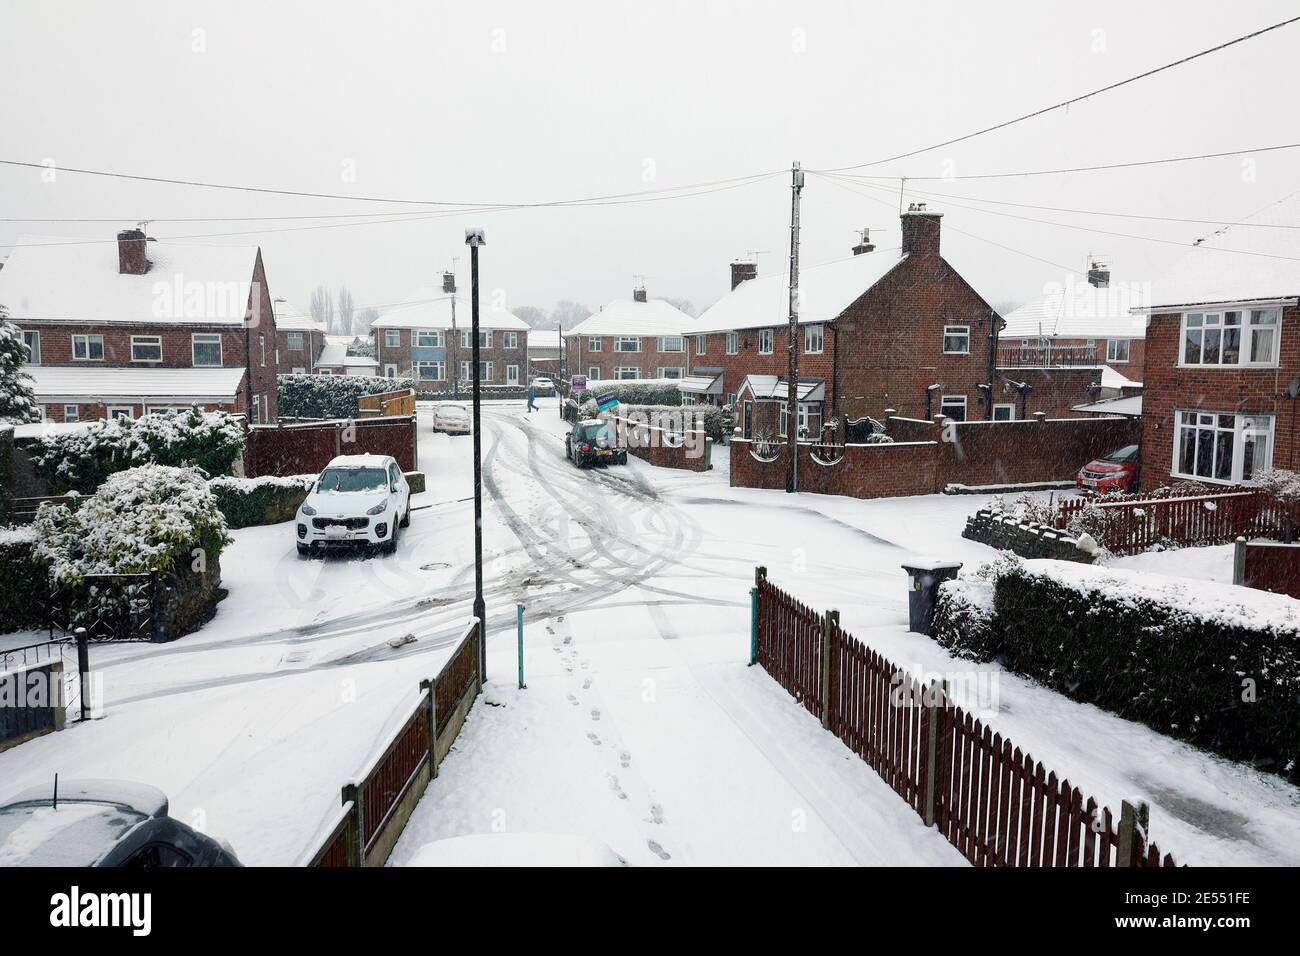 Route et maisons couvertes de neige Derbyshire Angleterre Royaume-Uni Banque D'Images